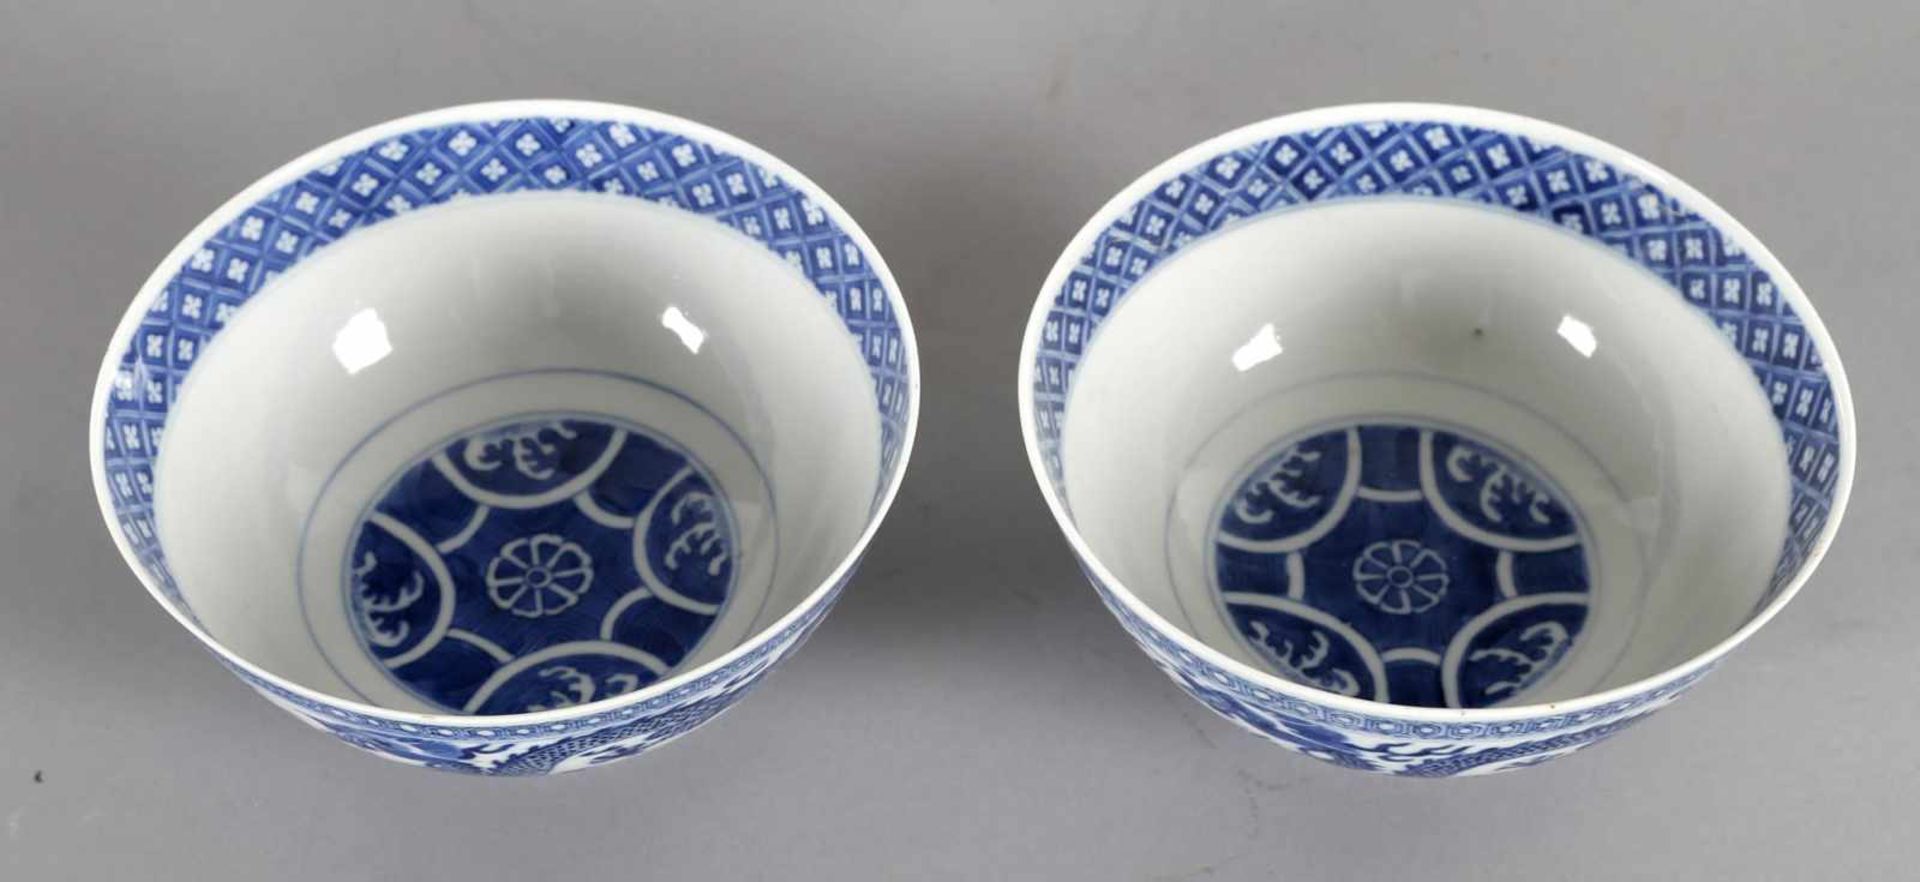 Paar Schalen aus Porzellan mit unterglasurblauem Dekor, China, 19. Jh.umlaufender Drachendekor, - Bild 2 aus 3